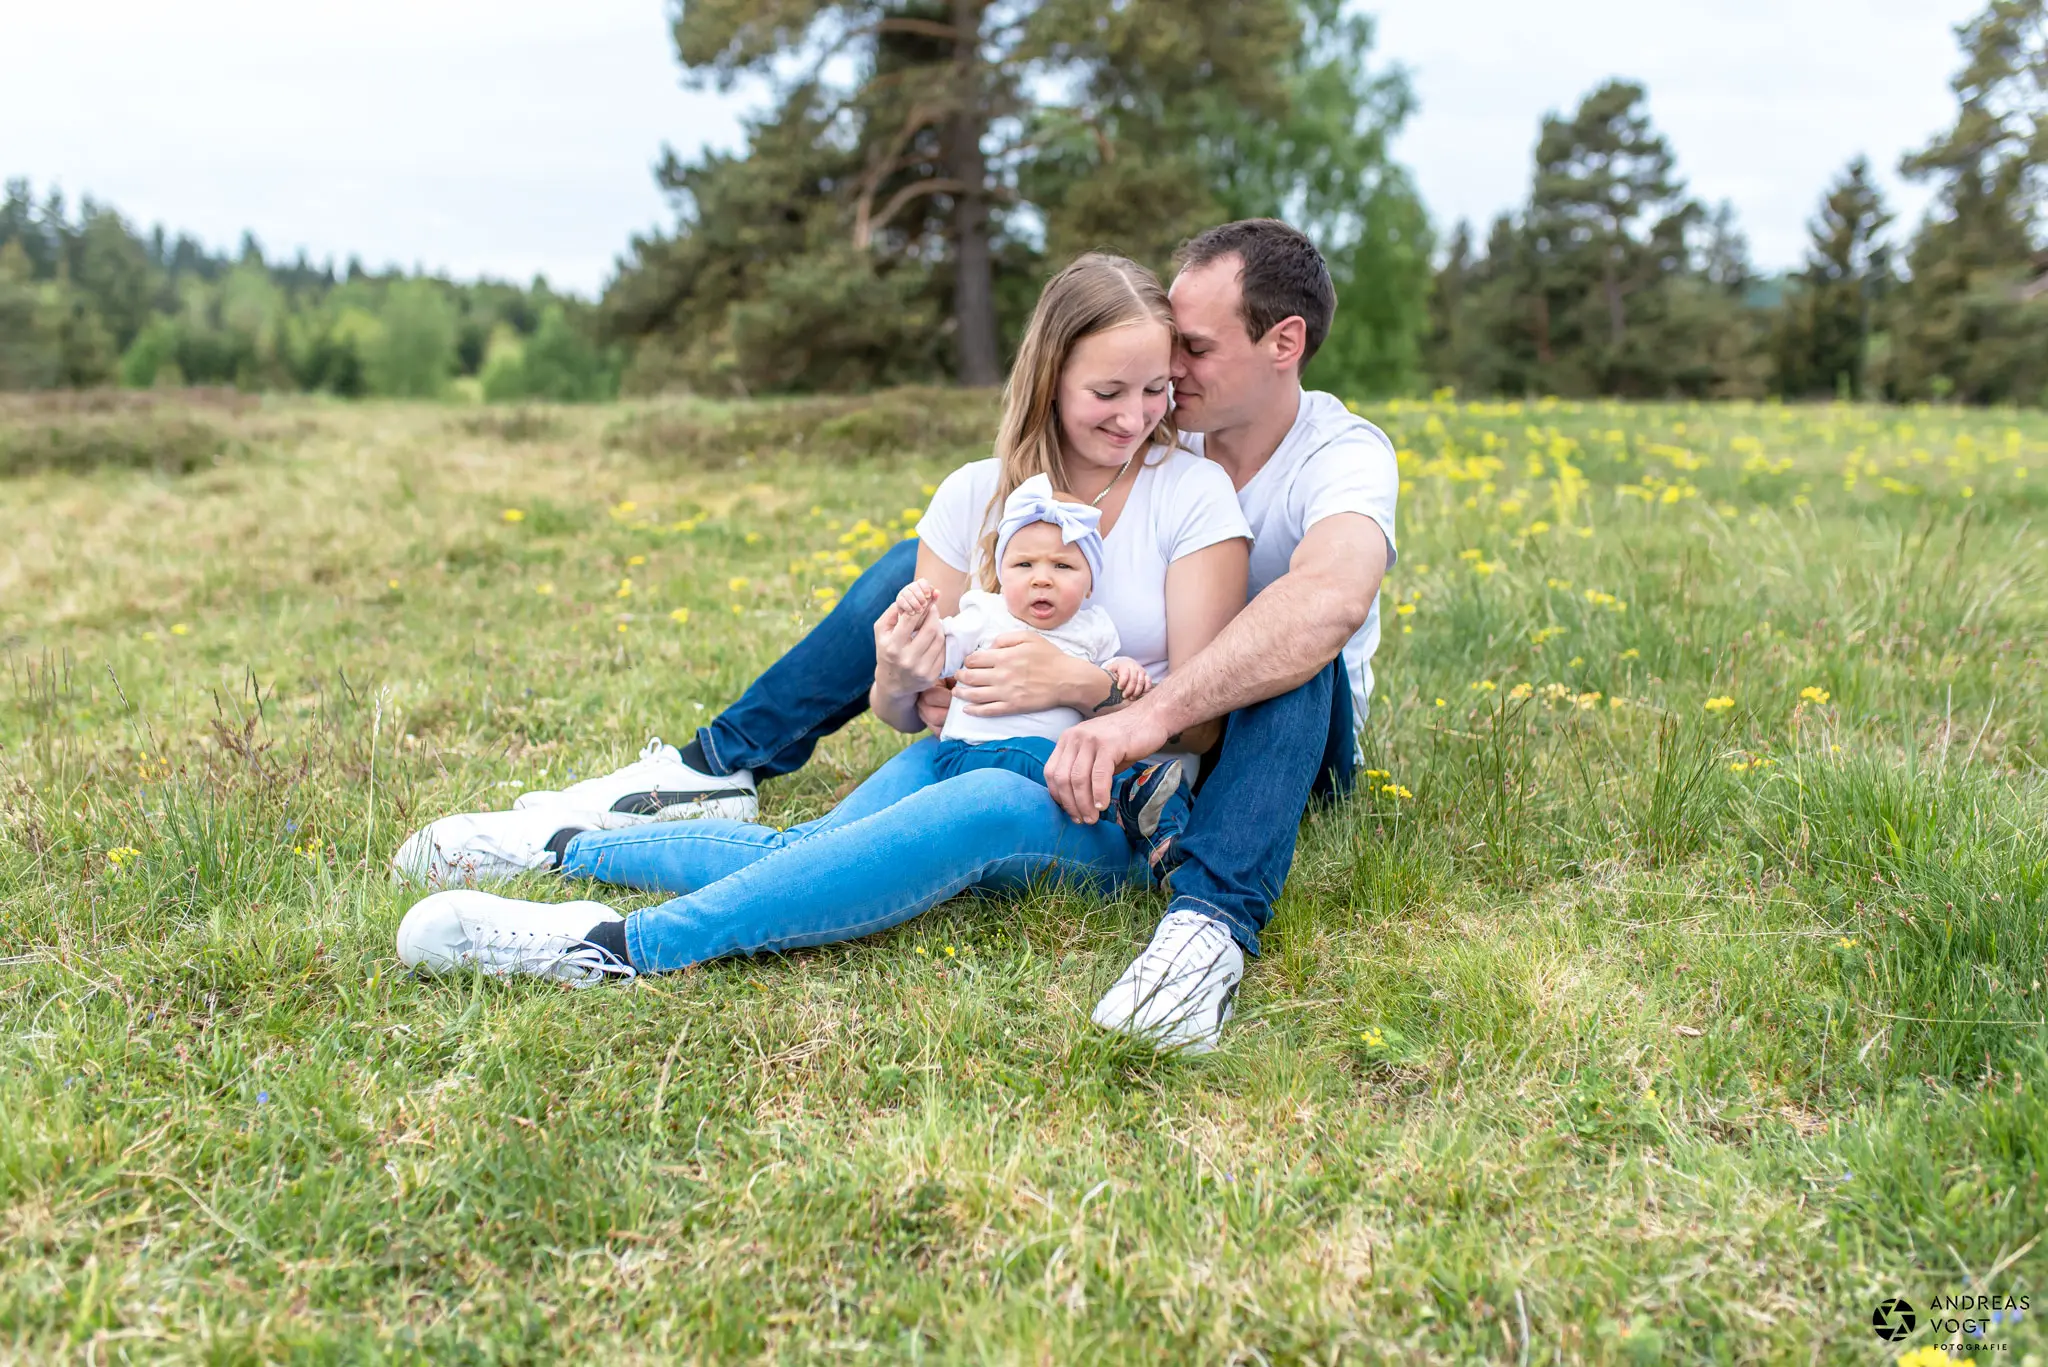 Familienfotos in der Wiese mit Baby - Fotograf Andreas Vogt aus Aalen